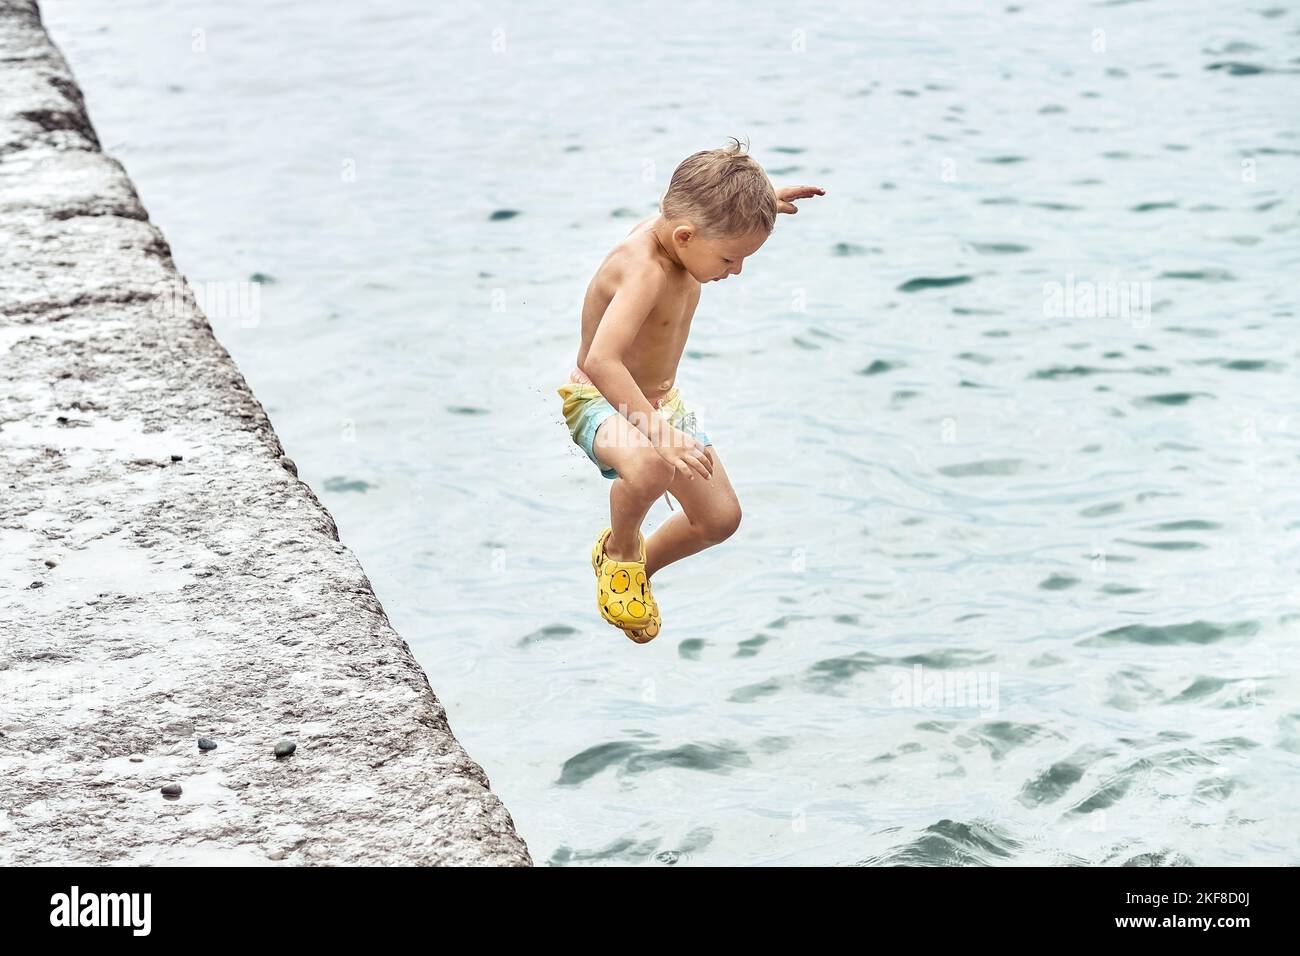 Der kleine Junge springt in lustiger Haltung vom Pier ins Meerwasser. Vorschulkinder verbringen gerne Urlaub mit der Familie am Meer Stockfoto